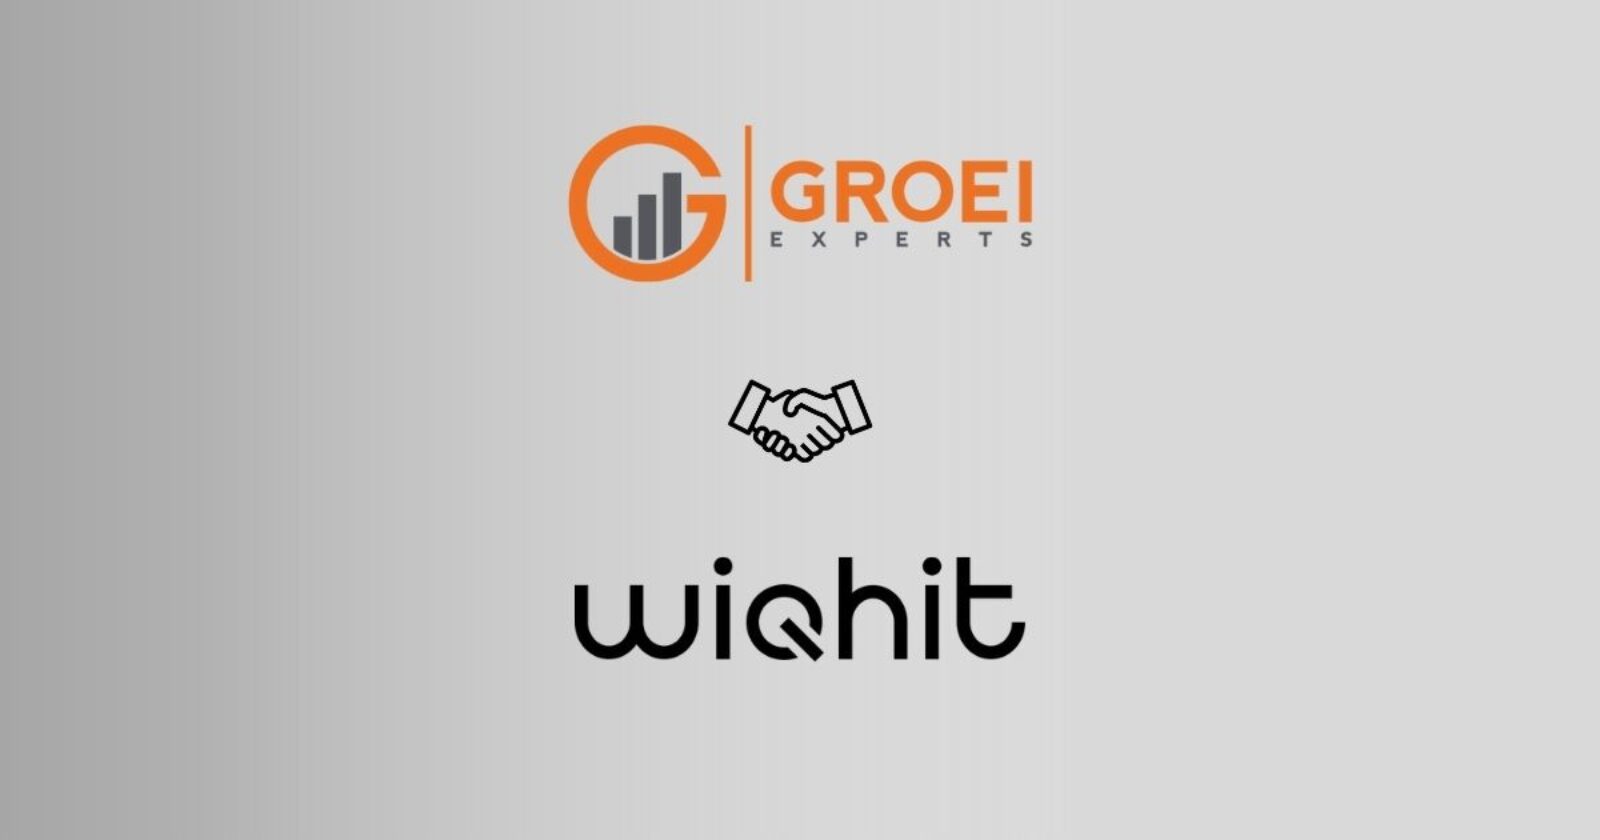 WiQhit helpt online marketing bureau Groei Experts met het realiseren van meer conversies.